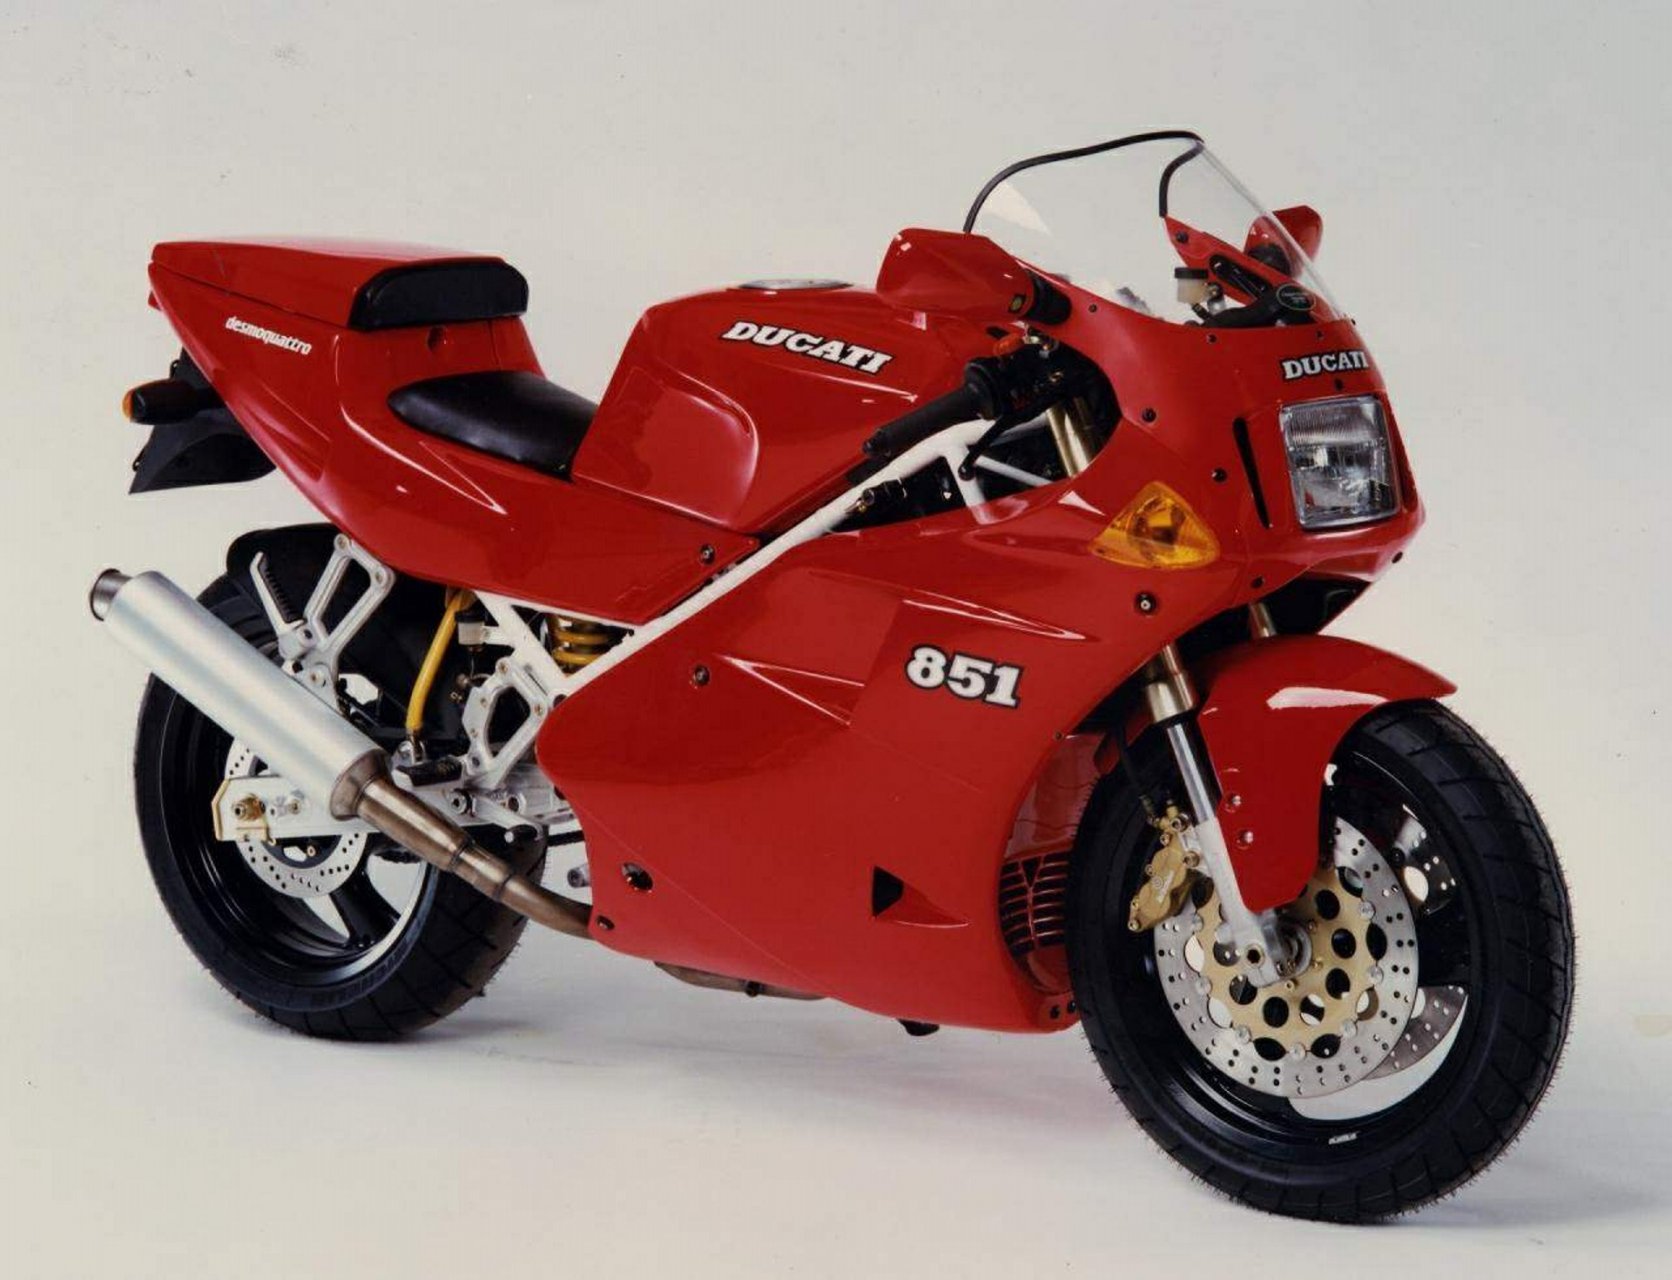 Moto del día: Ducati 851